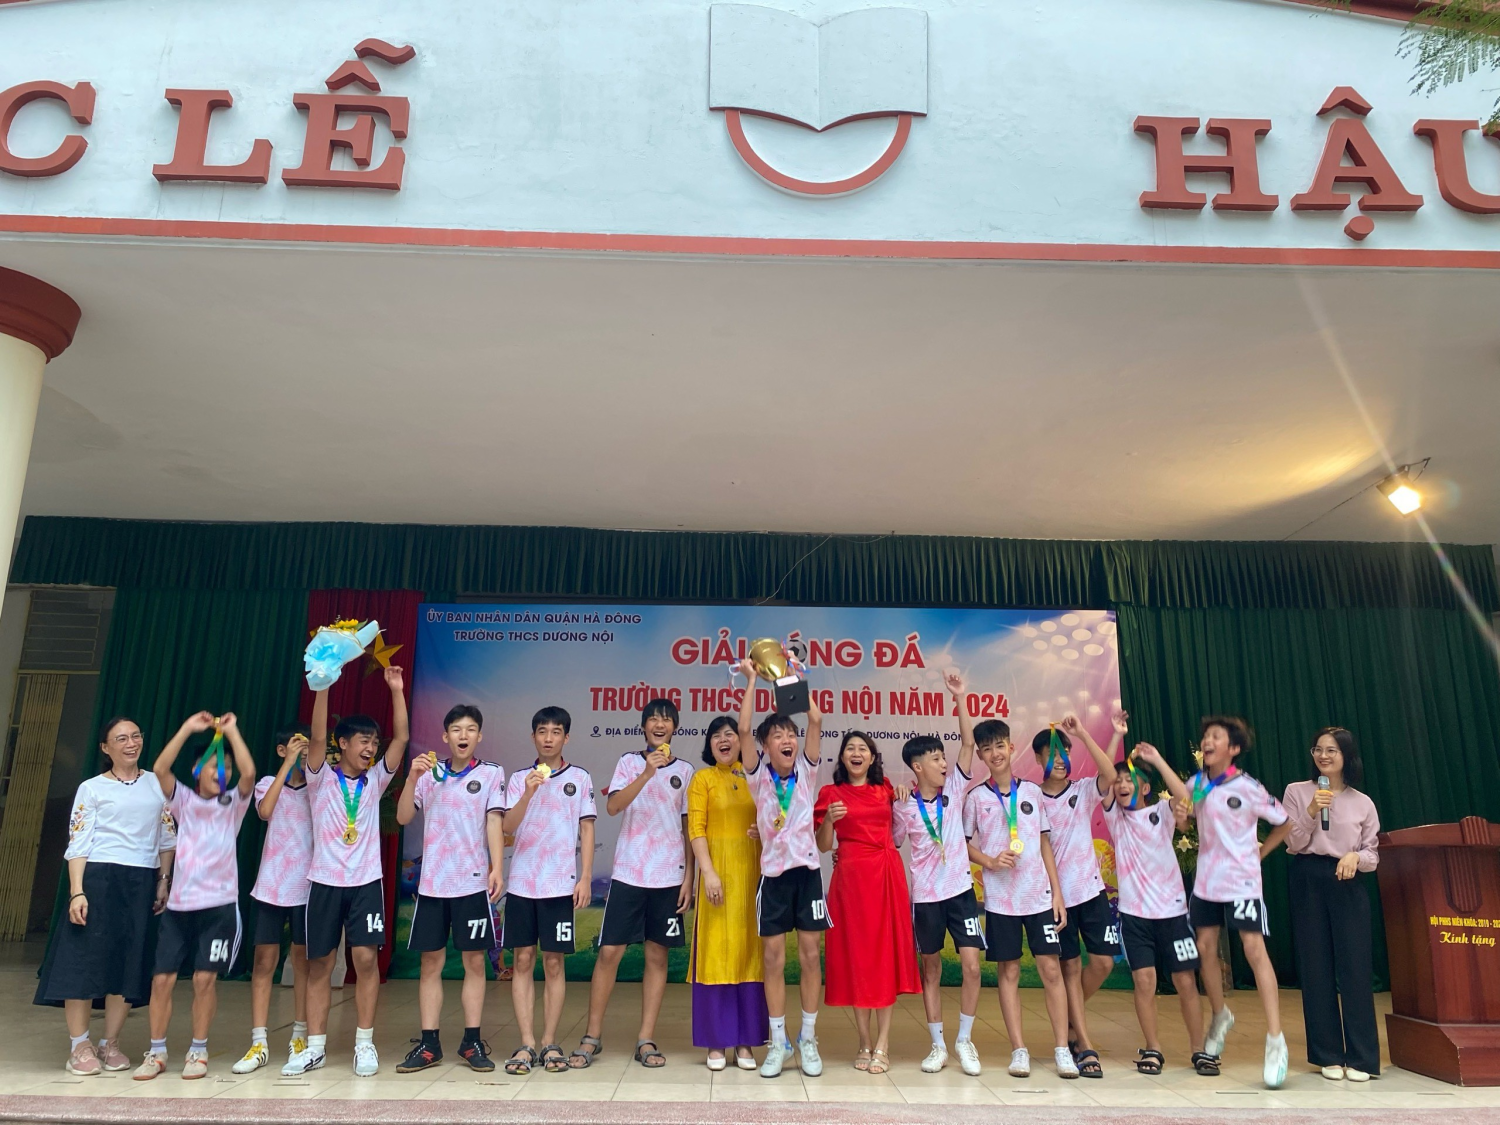 Hình ảnh trao giải đá bóng của trường THCS Dương Nội